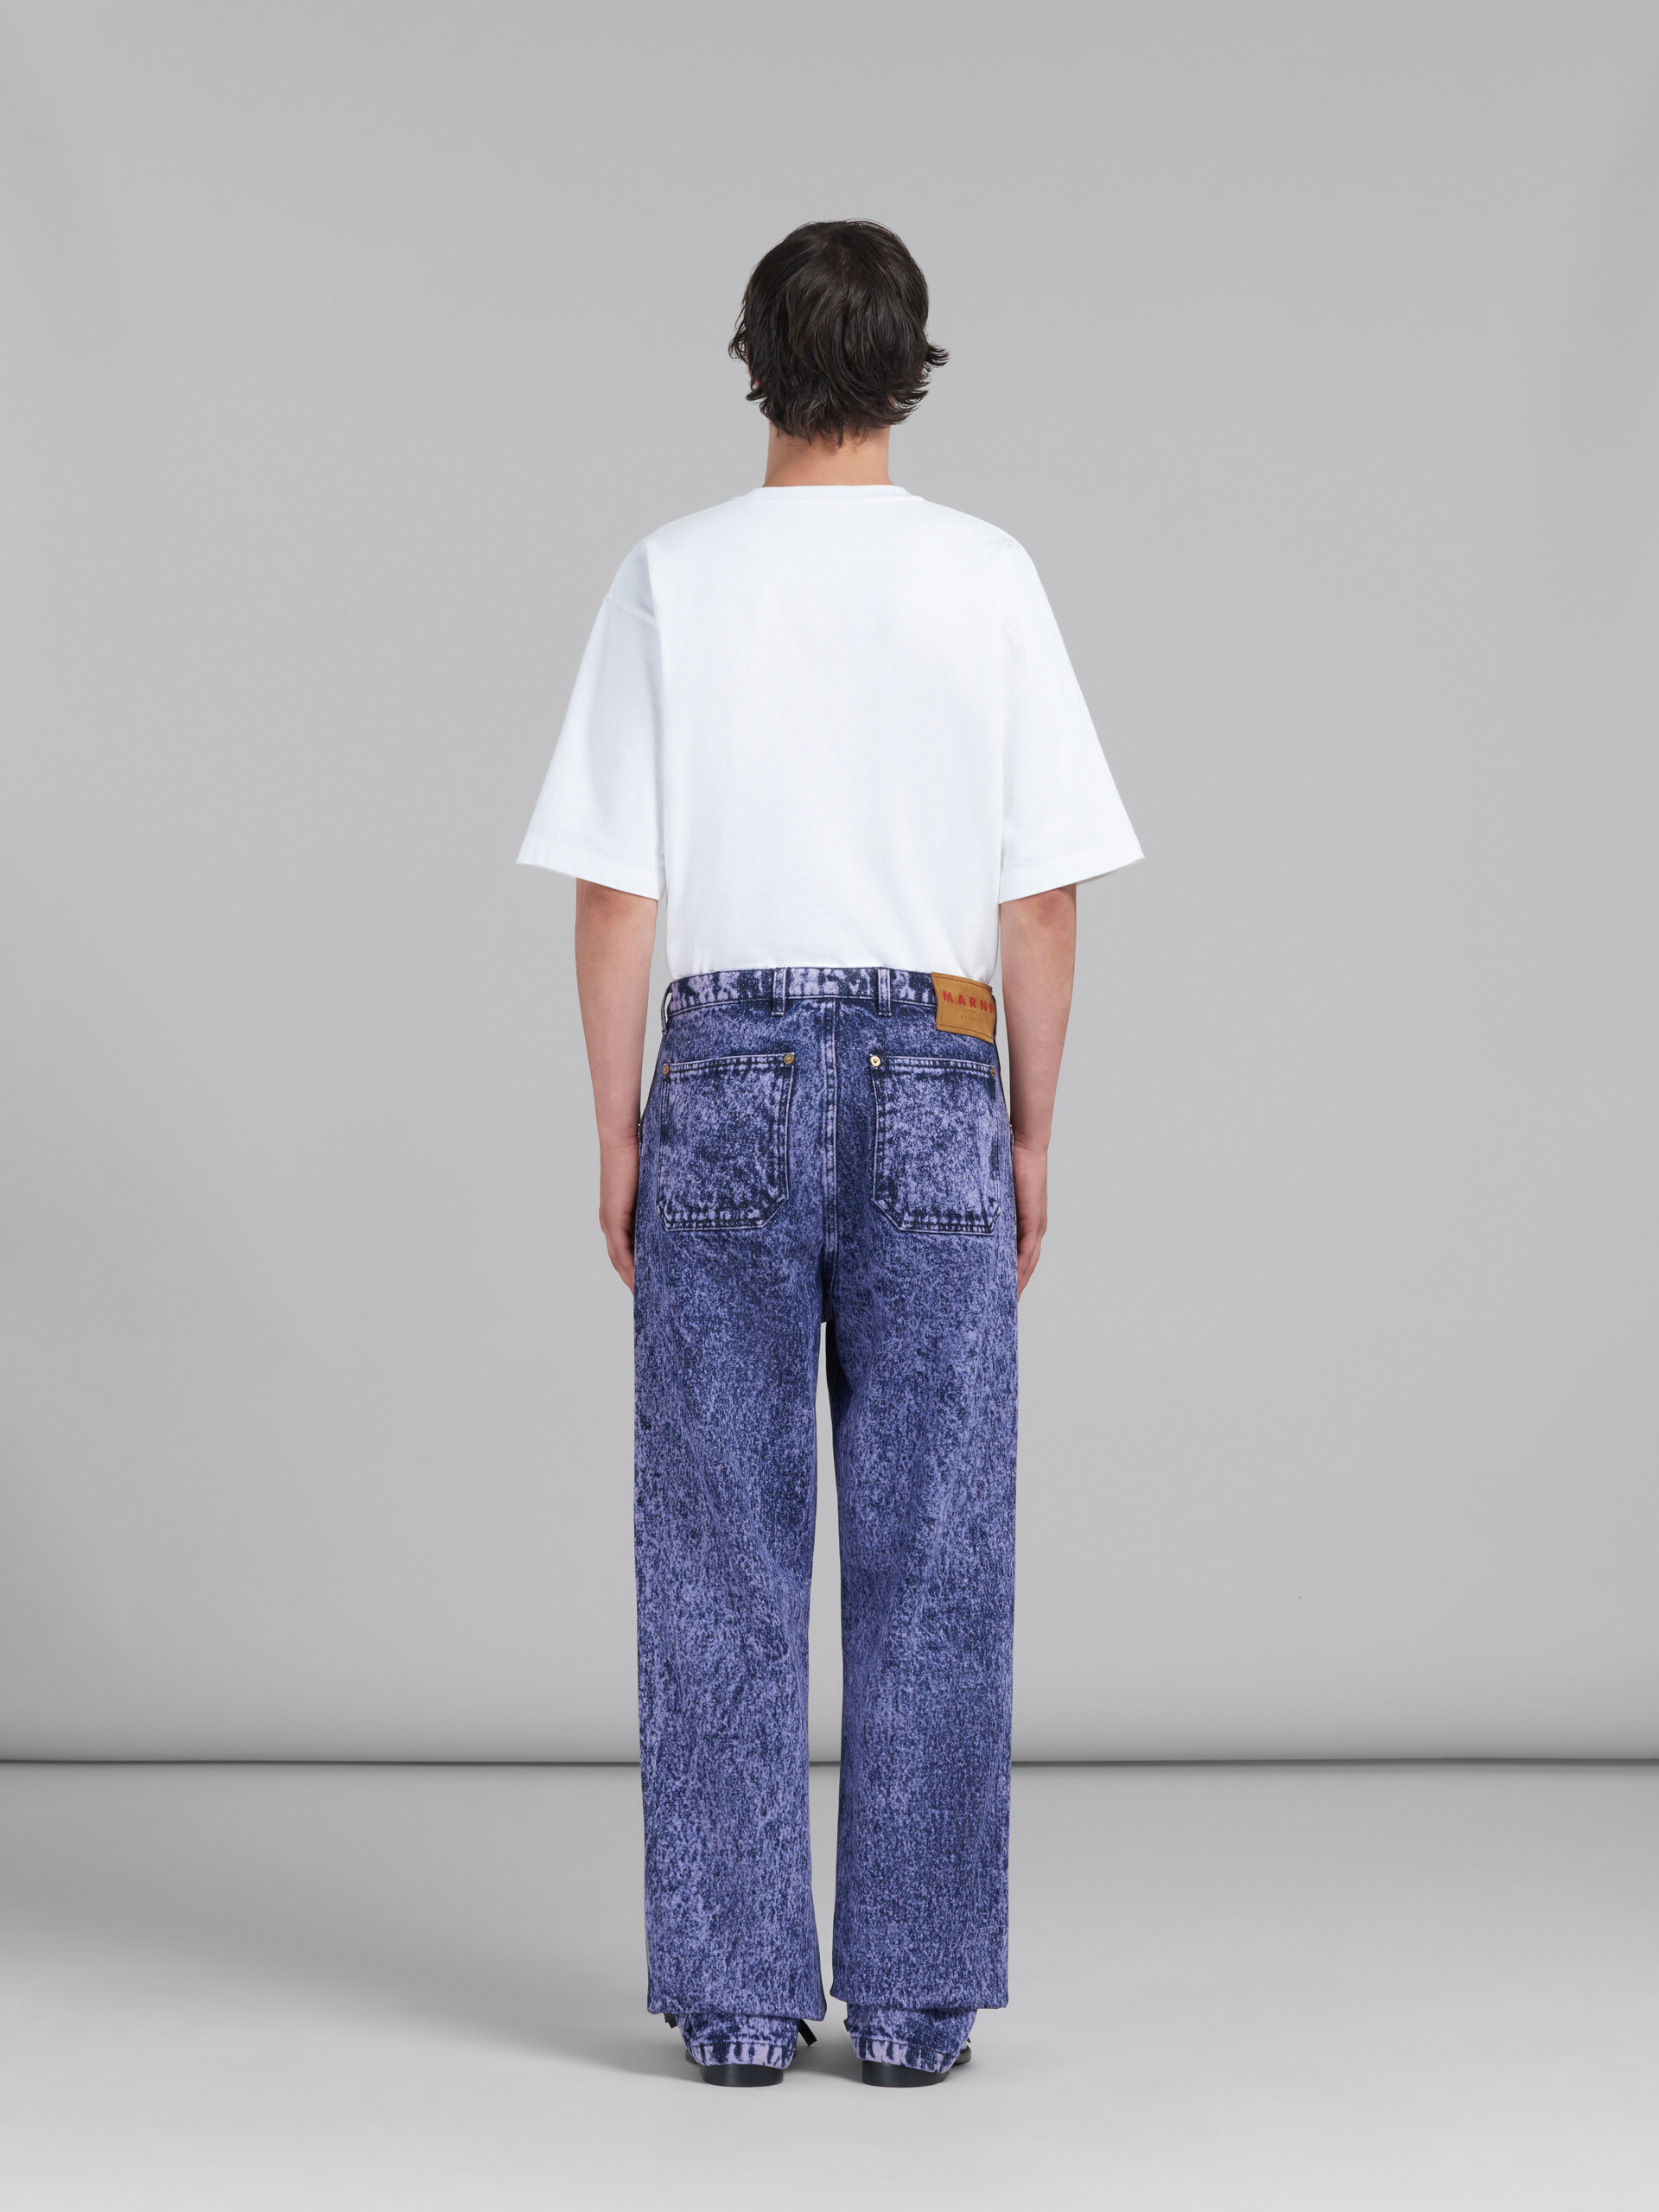 Jeans in denim blu effetto marmorizzato - Pantaloni - Image 3